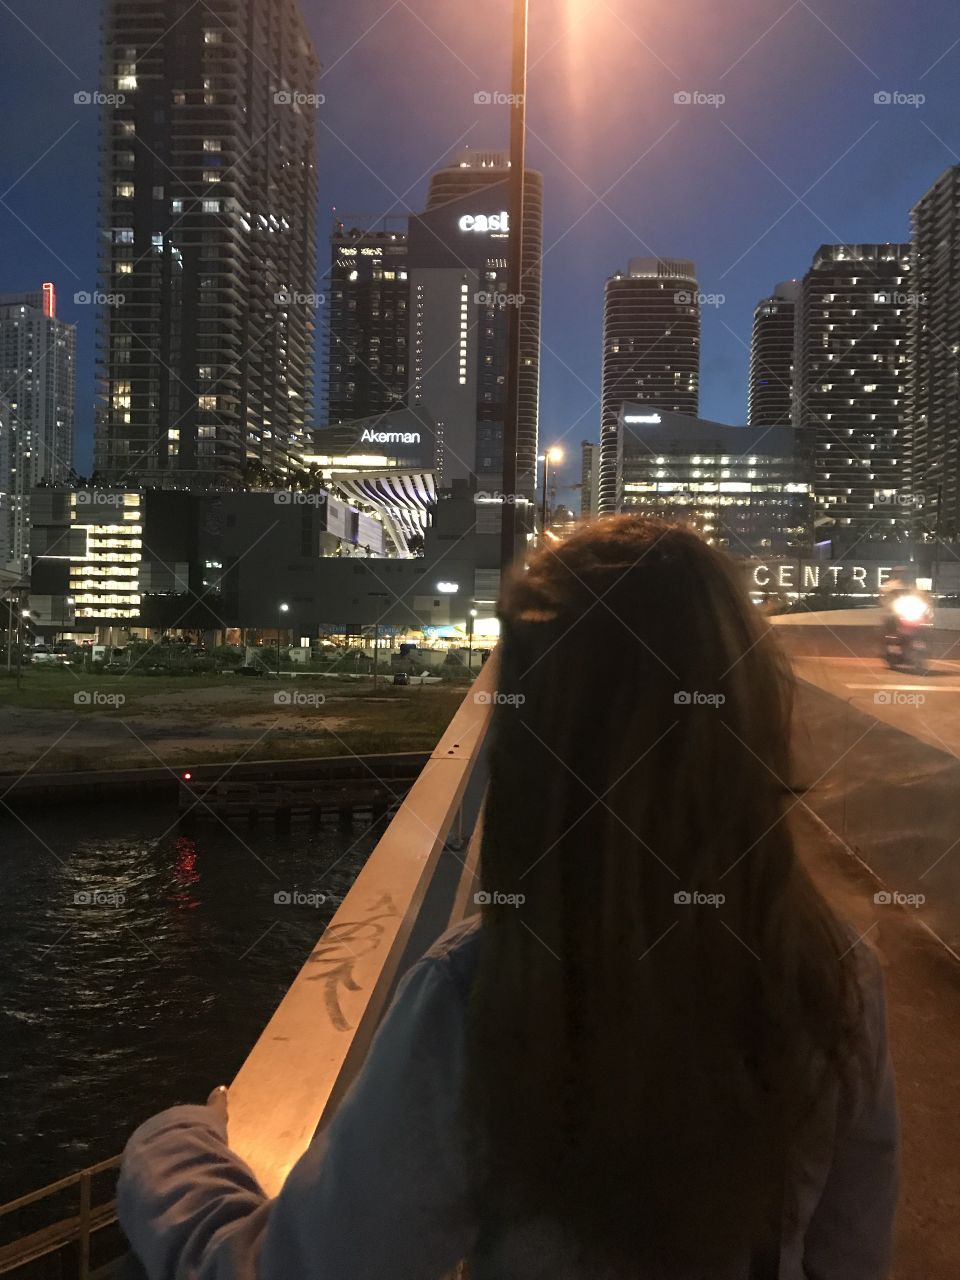 Downtown Miami city centre in night